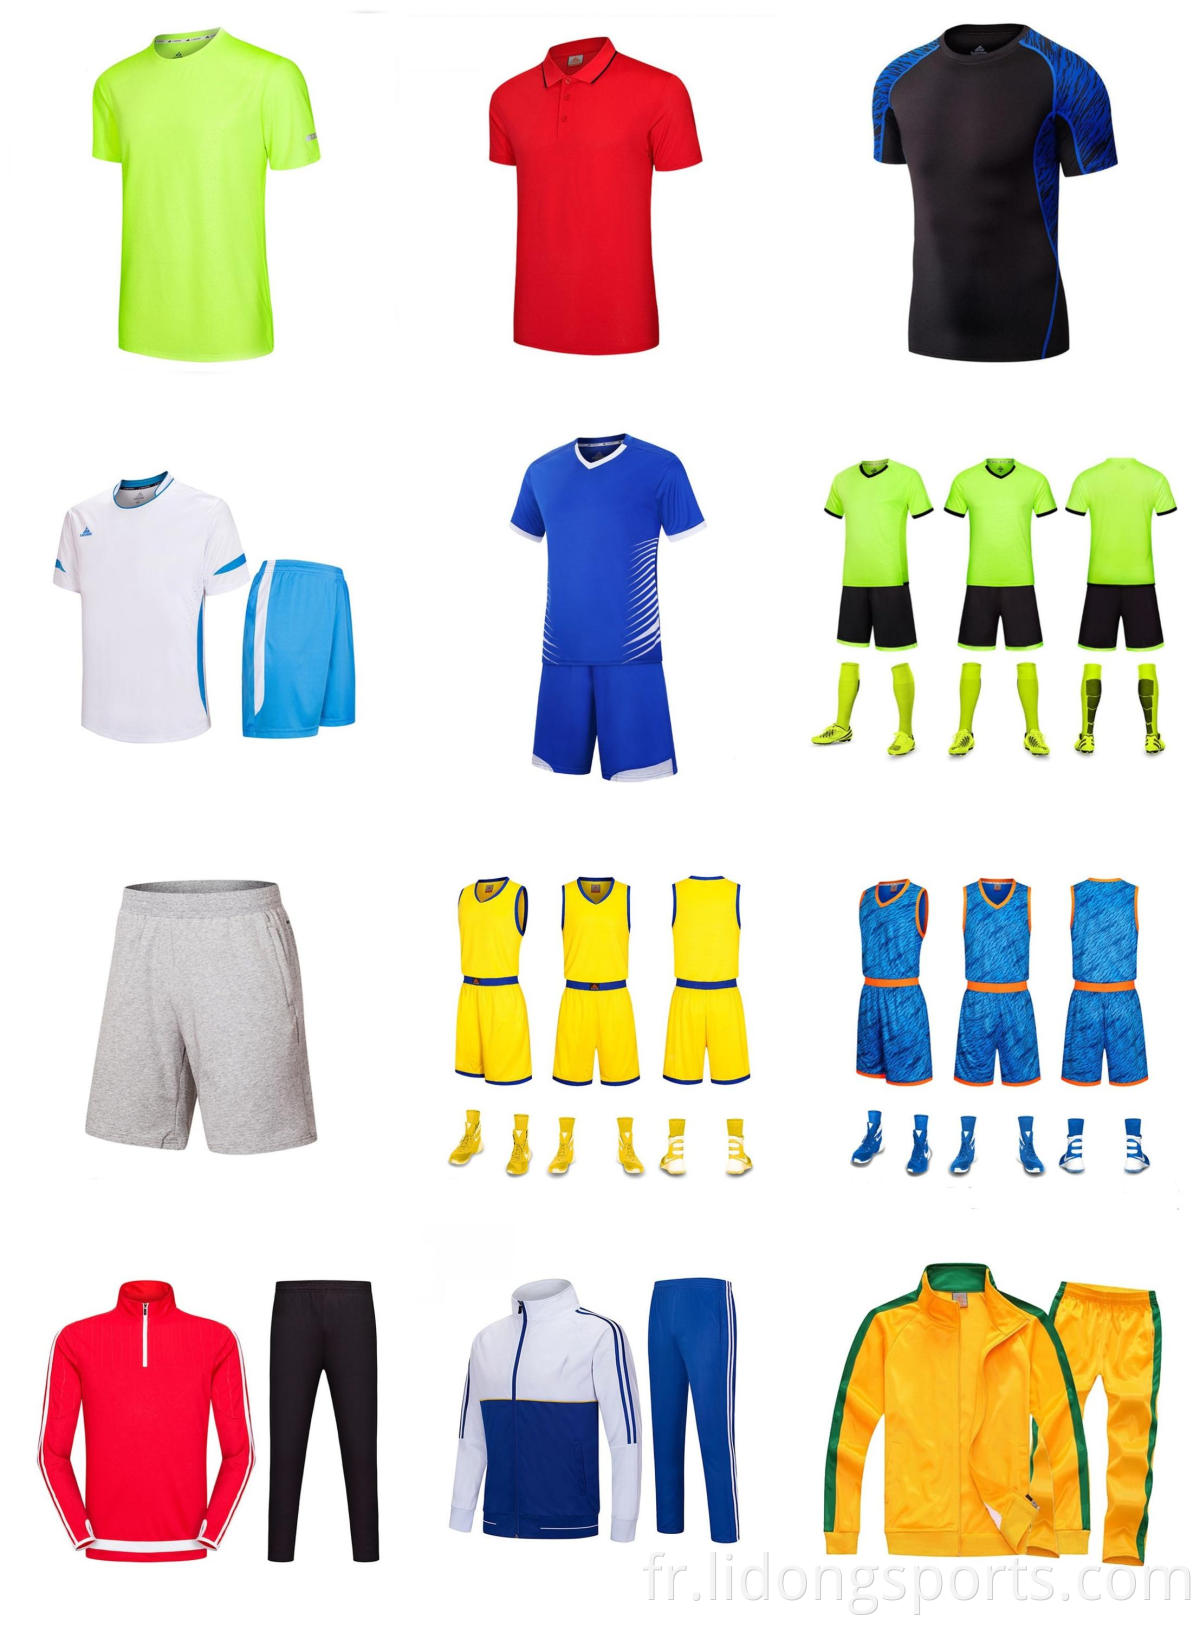 100% polyester nouveau modèle de football en maillot de football unisexe personnalisé